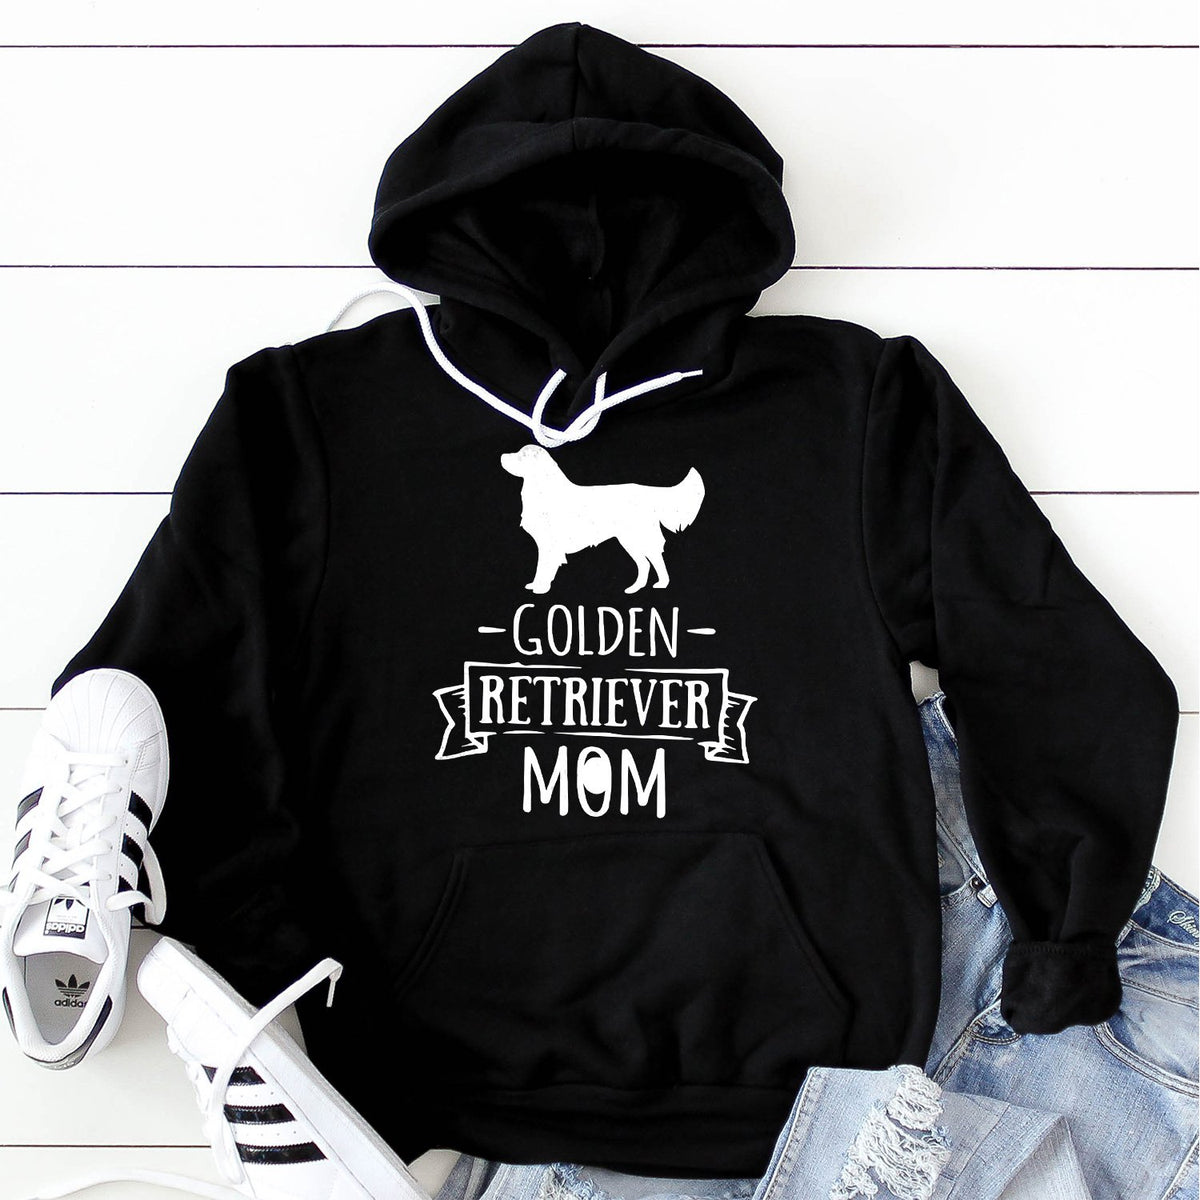 Golden Retriever Mom - Hoodie Sweatshirt